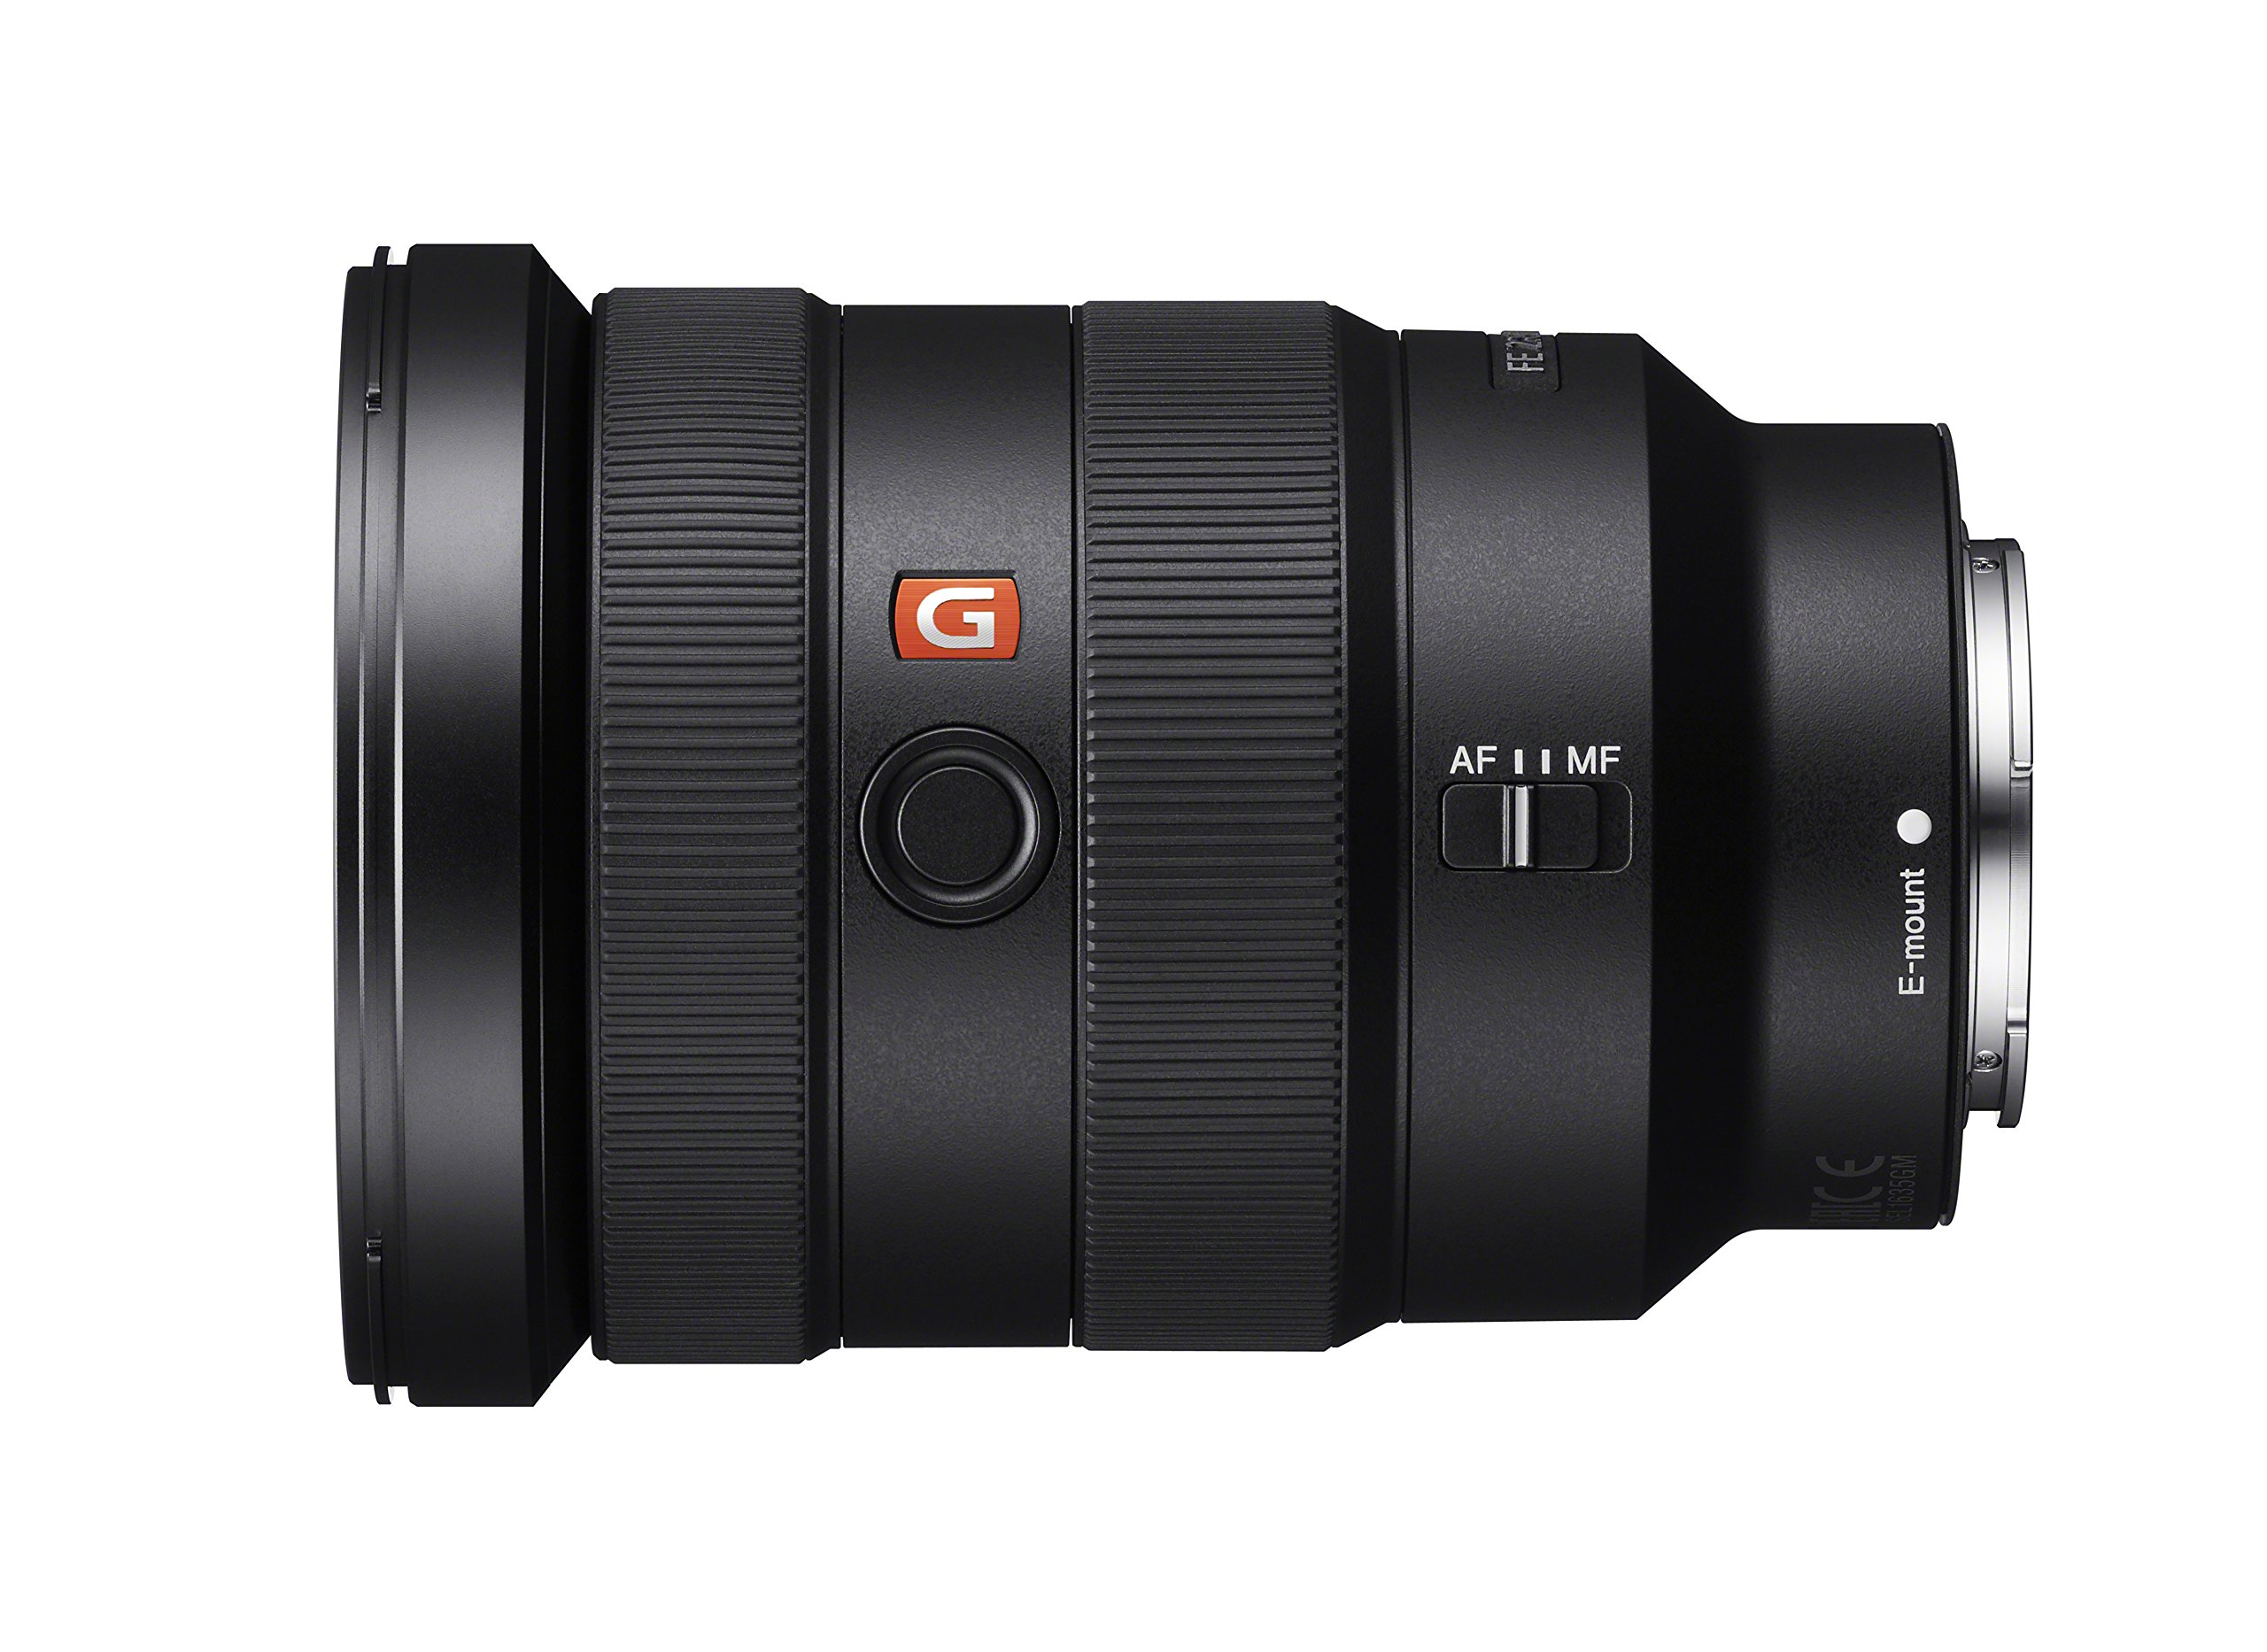 Ống kính máy ảnh Sony SEL1635GM 16-35mm f/2.8-22 Zoom Camera Lens, Black